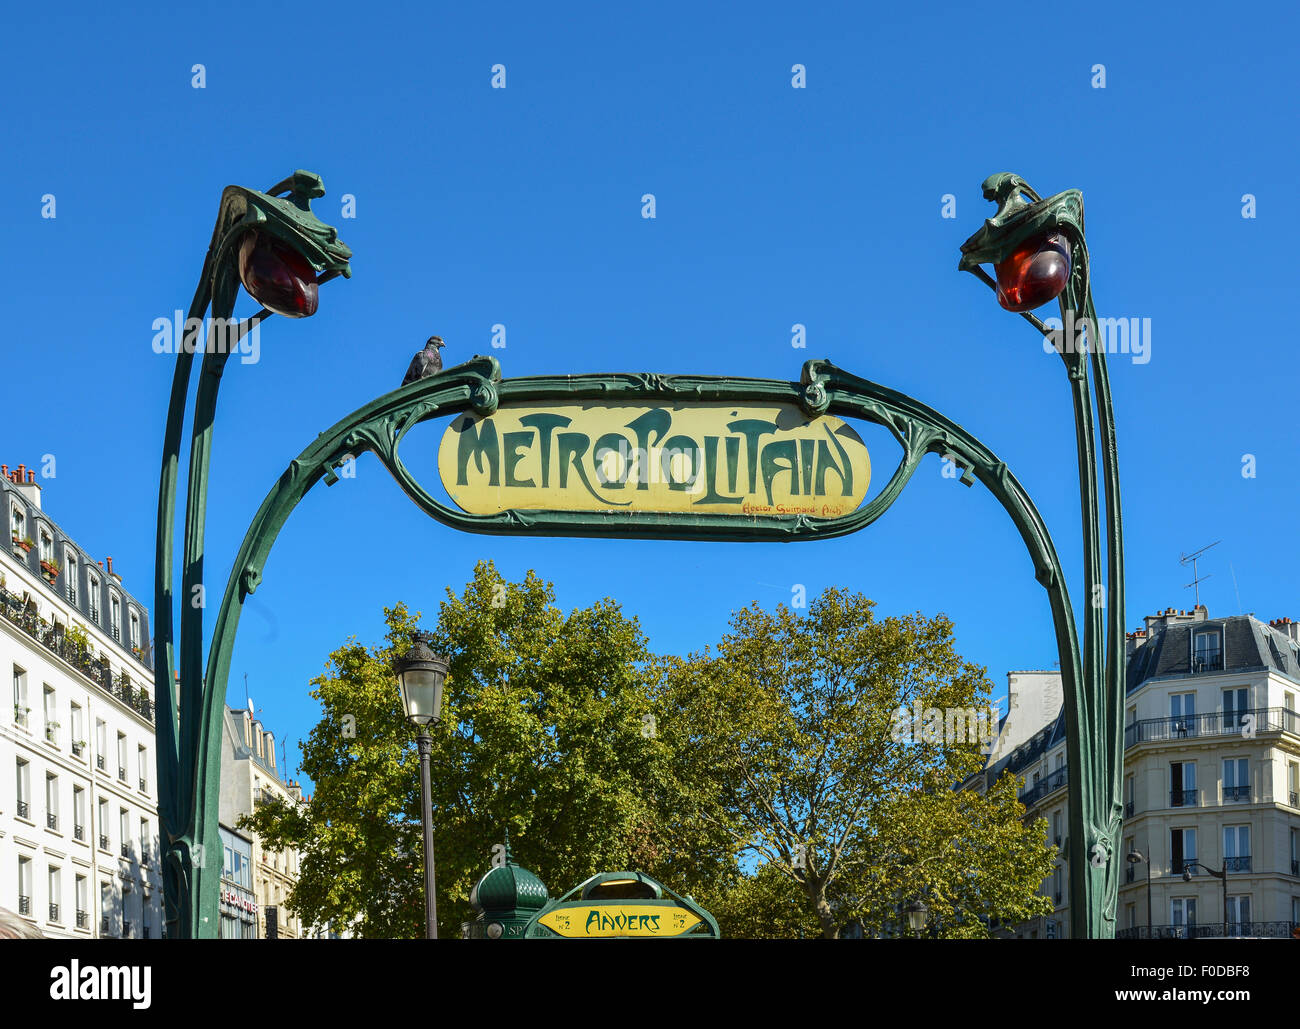 Metropolitain sign, metro, Paris, Île-de-France, France Stock Photo